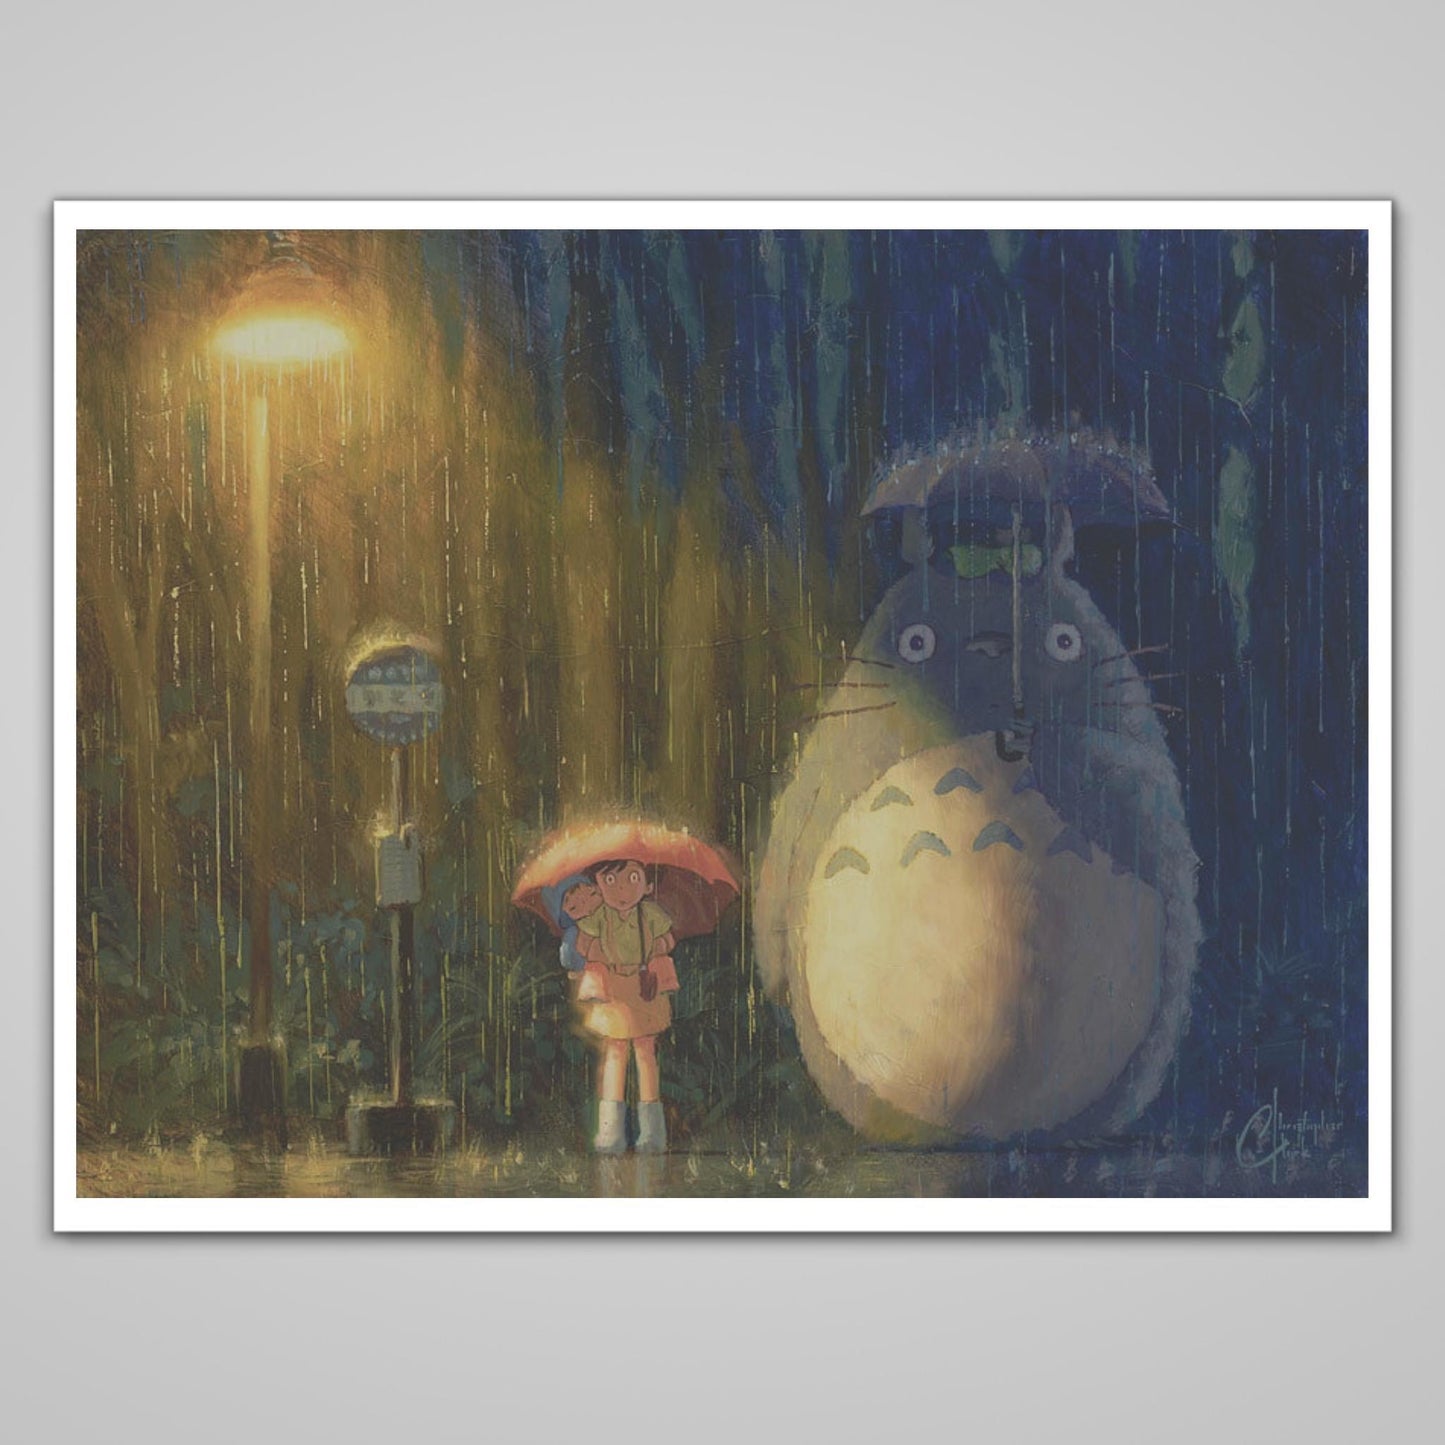 My Neighbor Totoro (Studio Ghibli) Premium Art Print